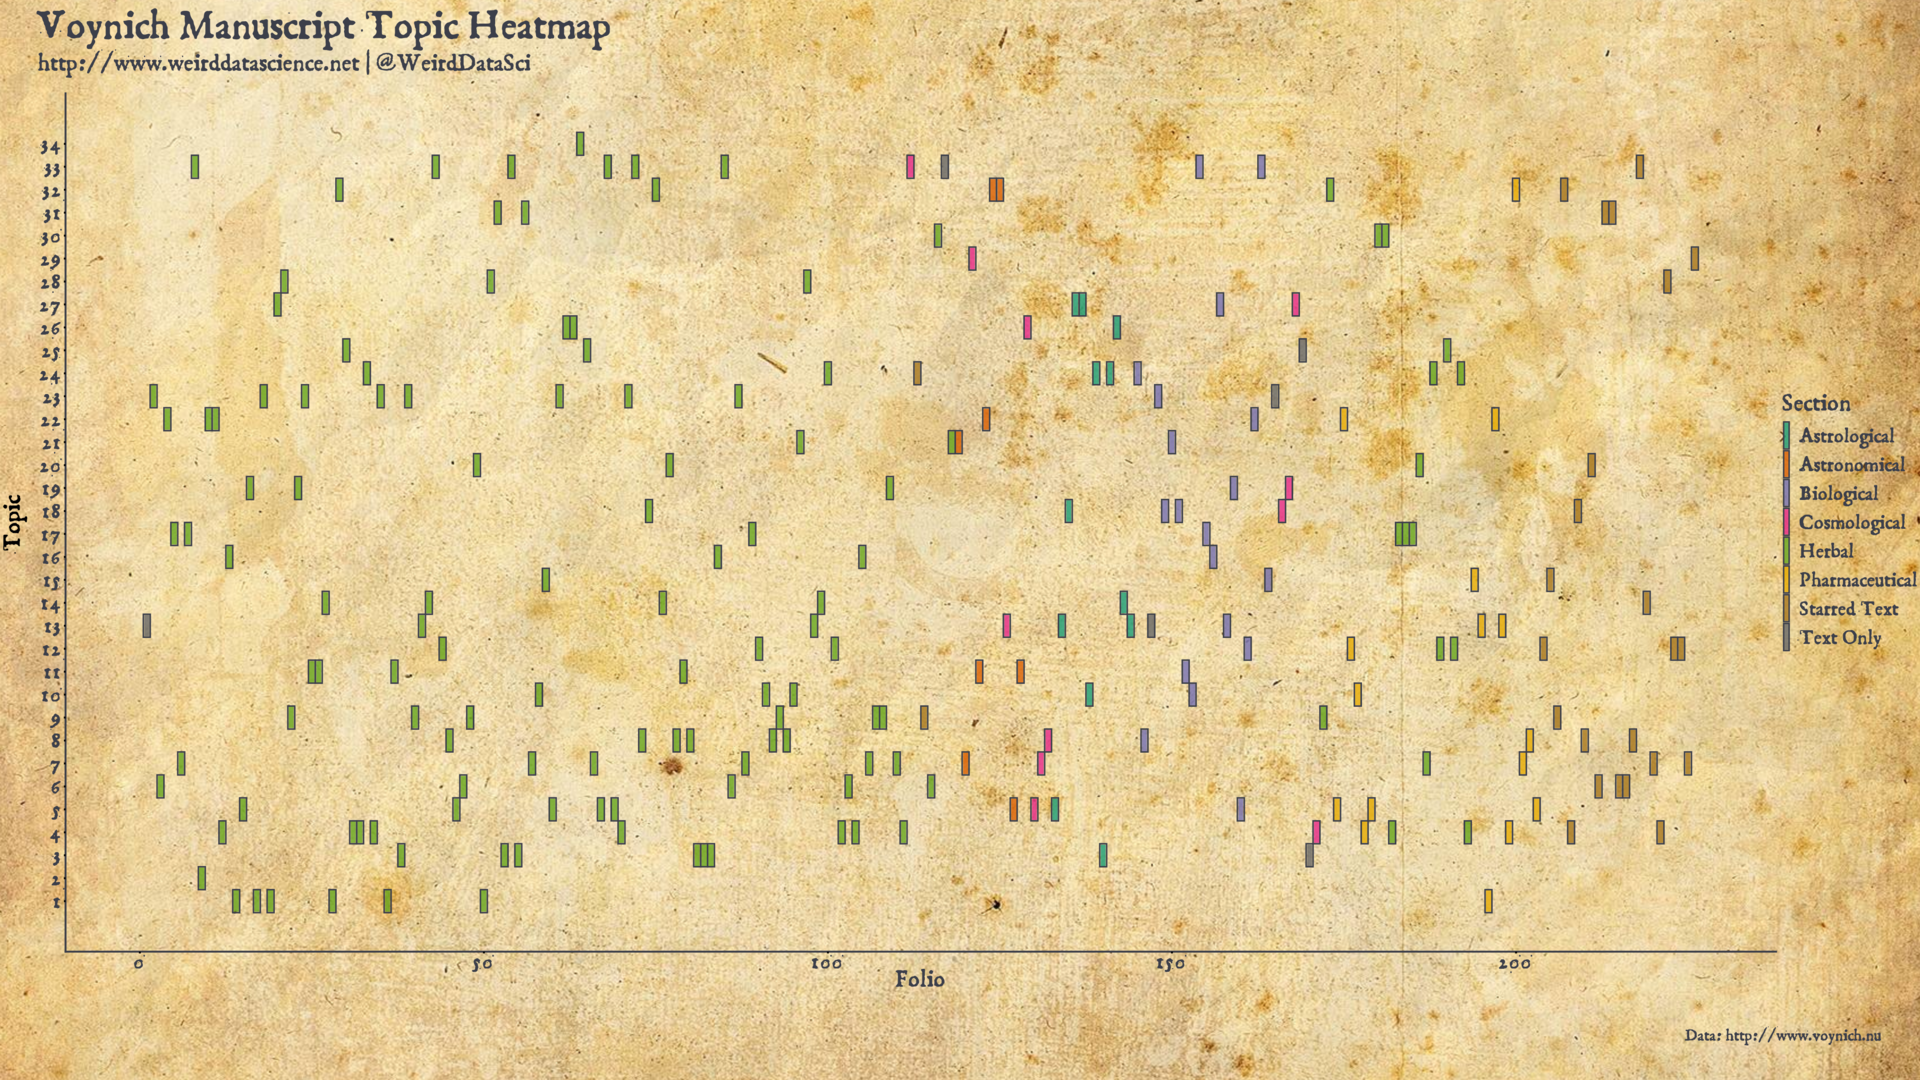 Voynich Manuscript Folio Topic Heatmap